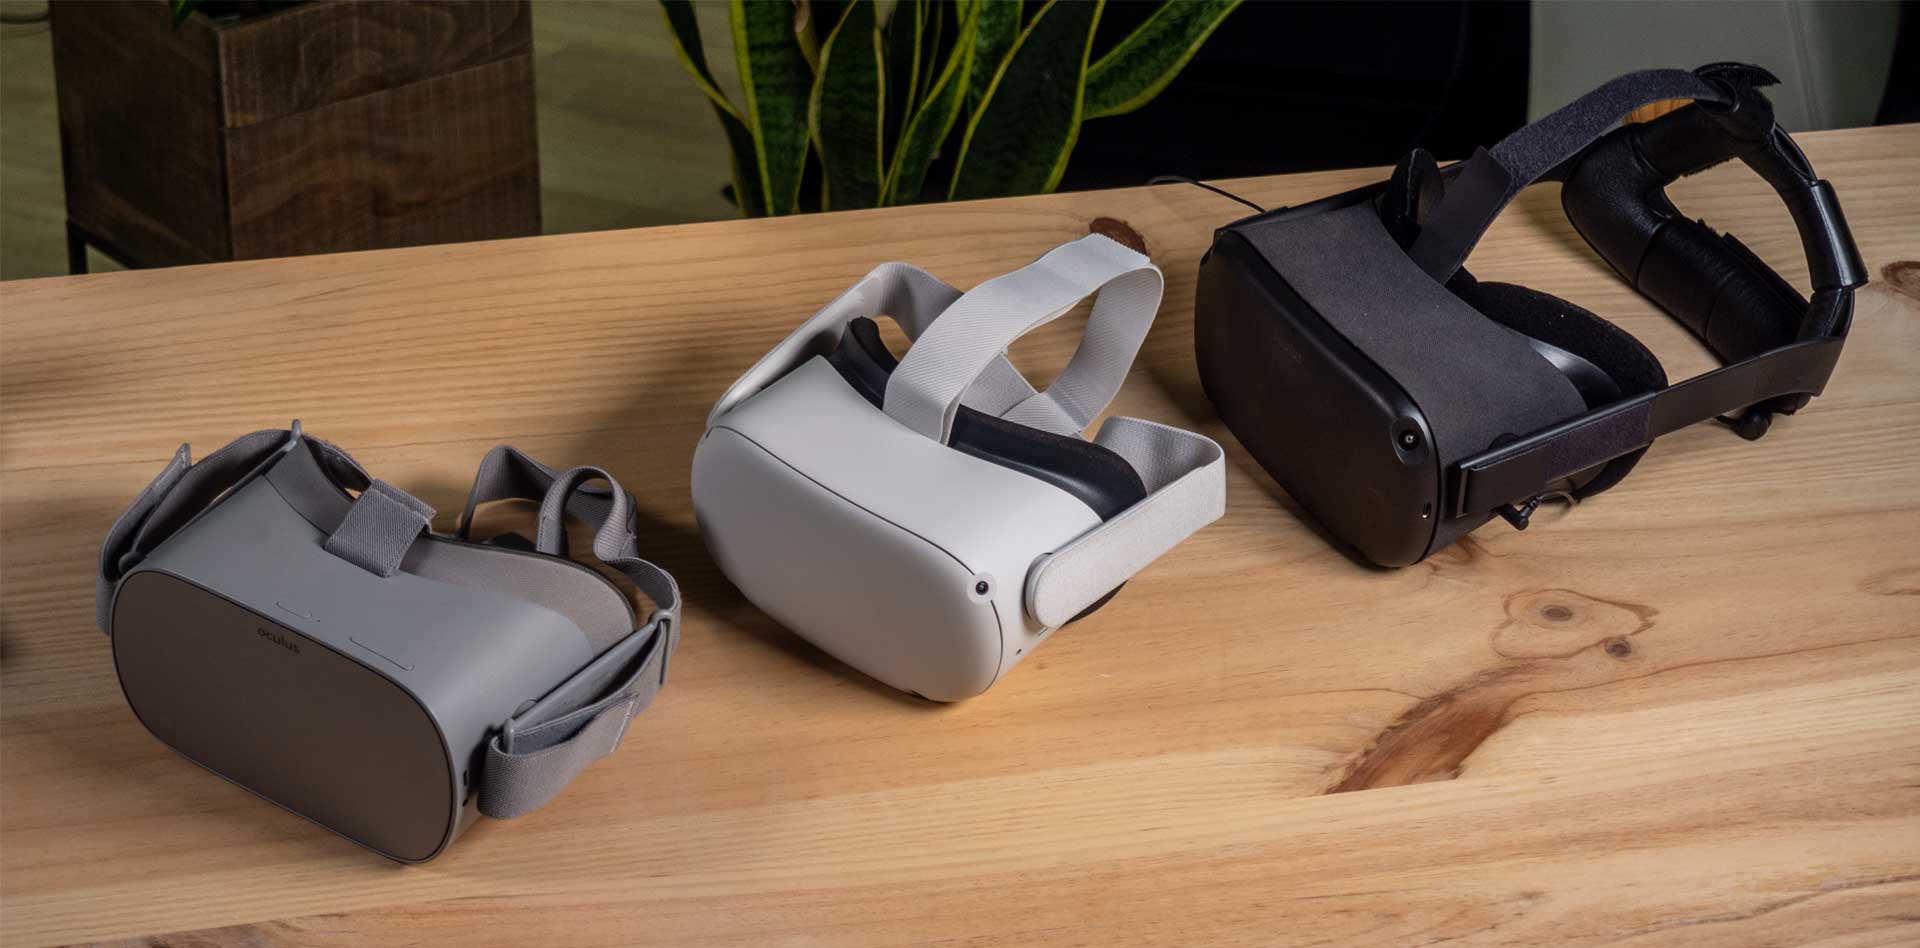 Comprar Oculus Rift S ¿Es buena o mala idea?